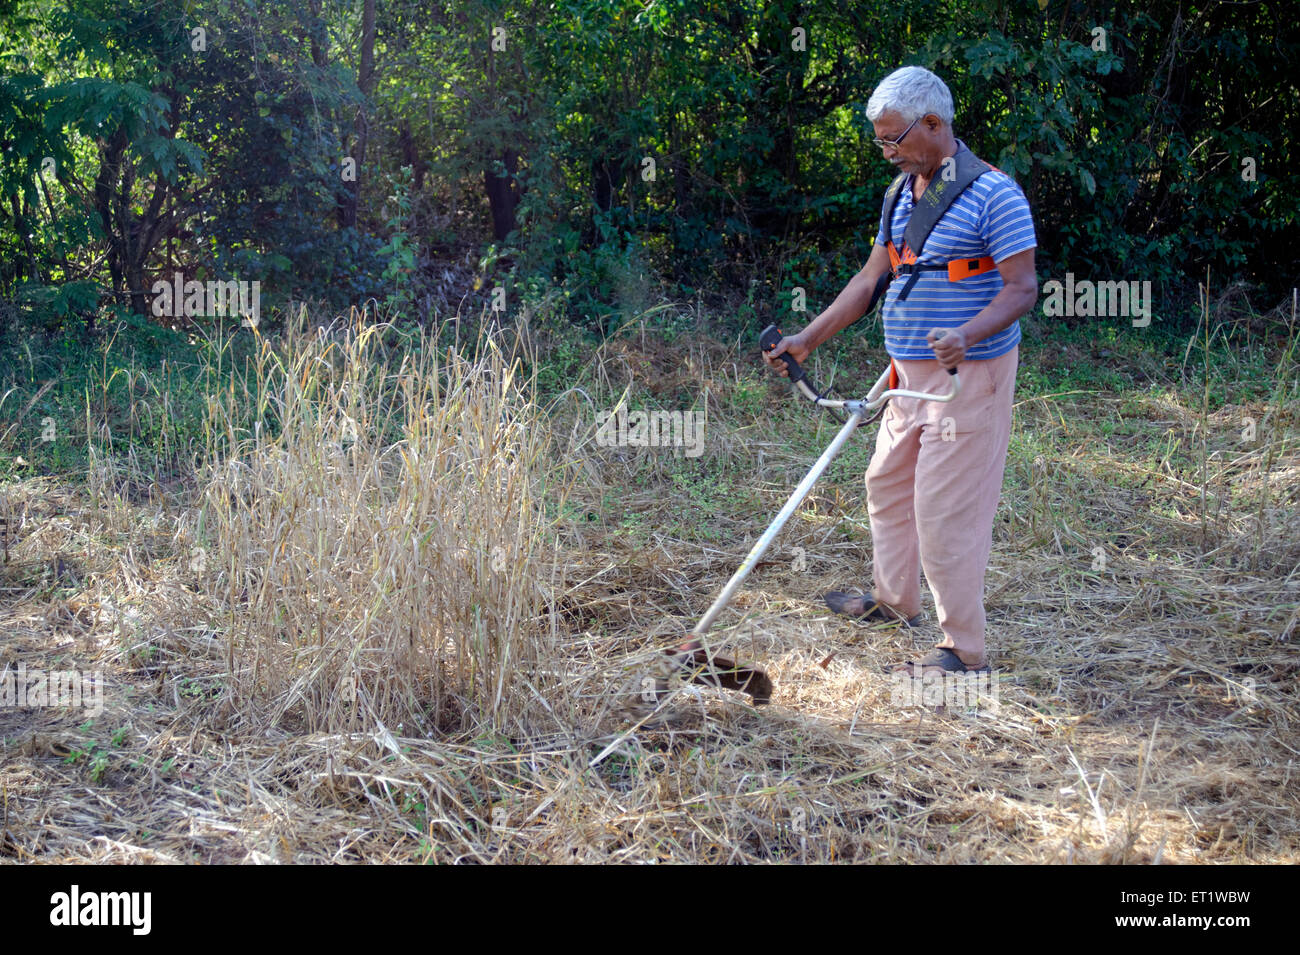 Bauer mit Grass schneiden Maschine Konkan Maharashtra Indien Herr #556 Stockfoto